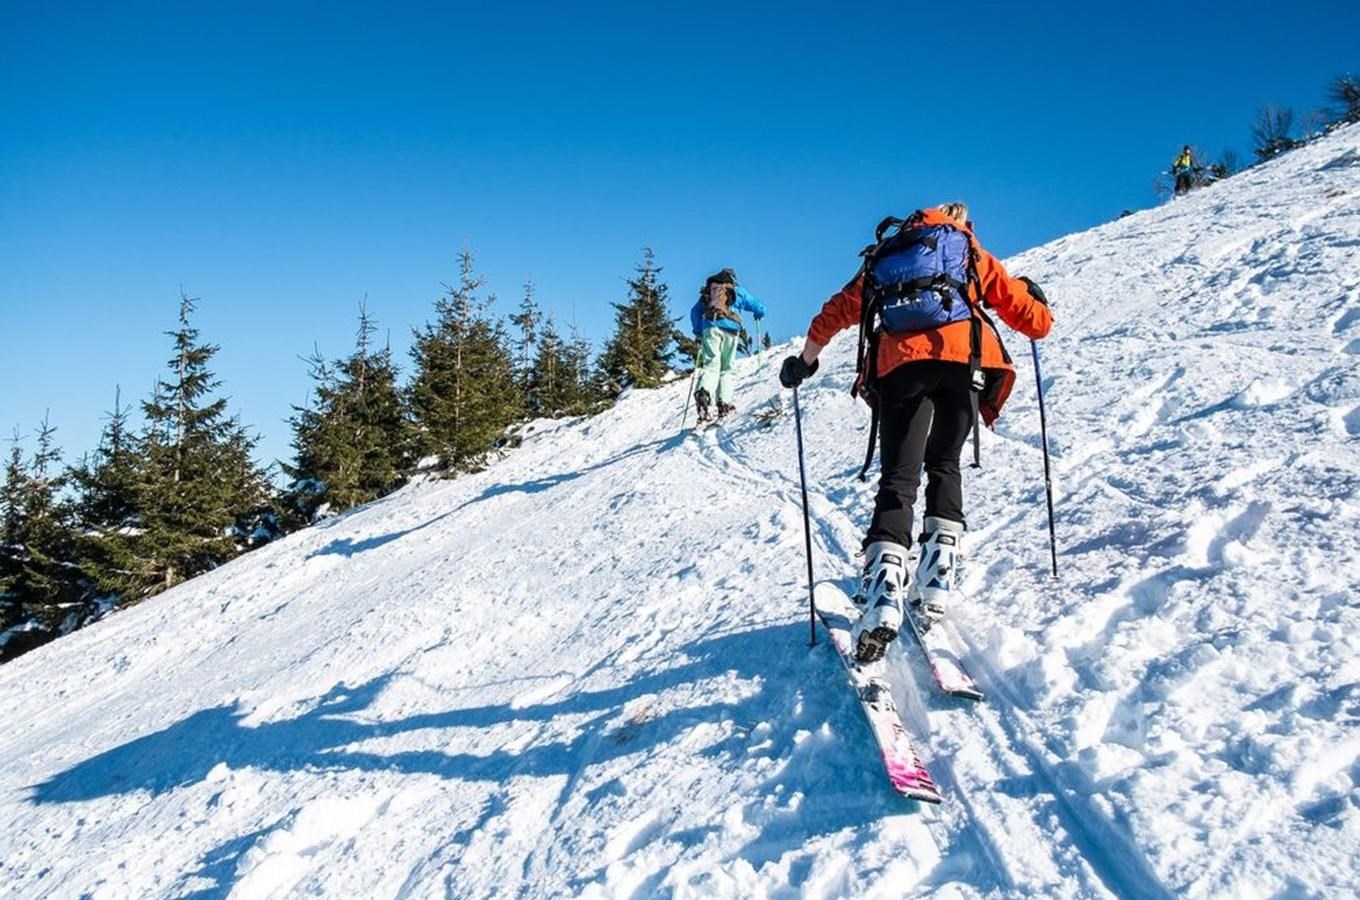 Užijte si nejkrásnější skialpinistické trasy v ČR